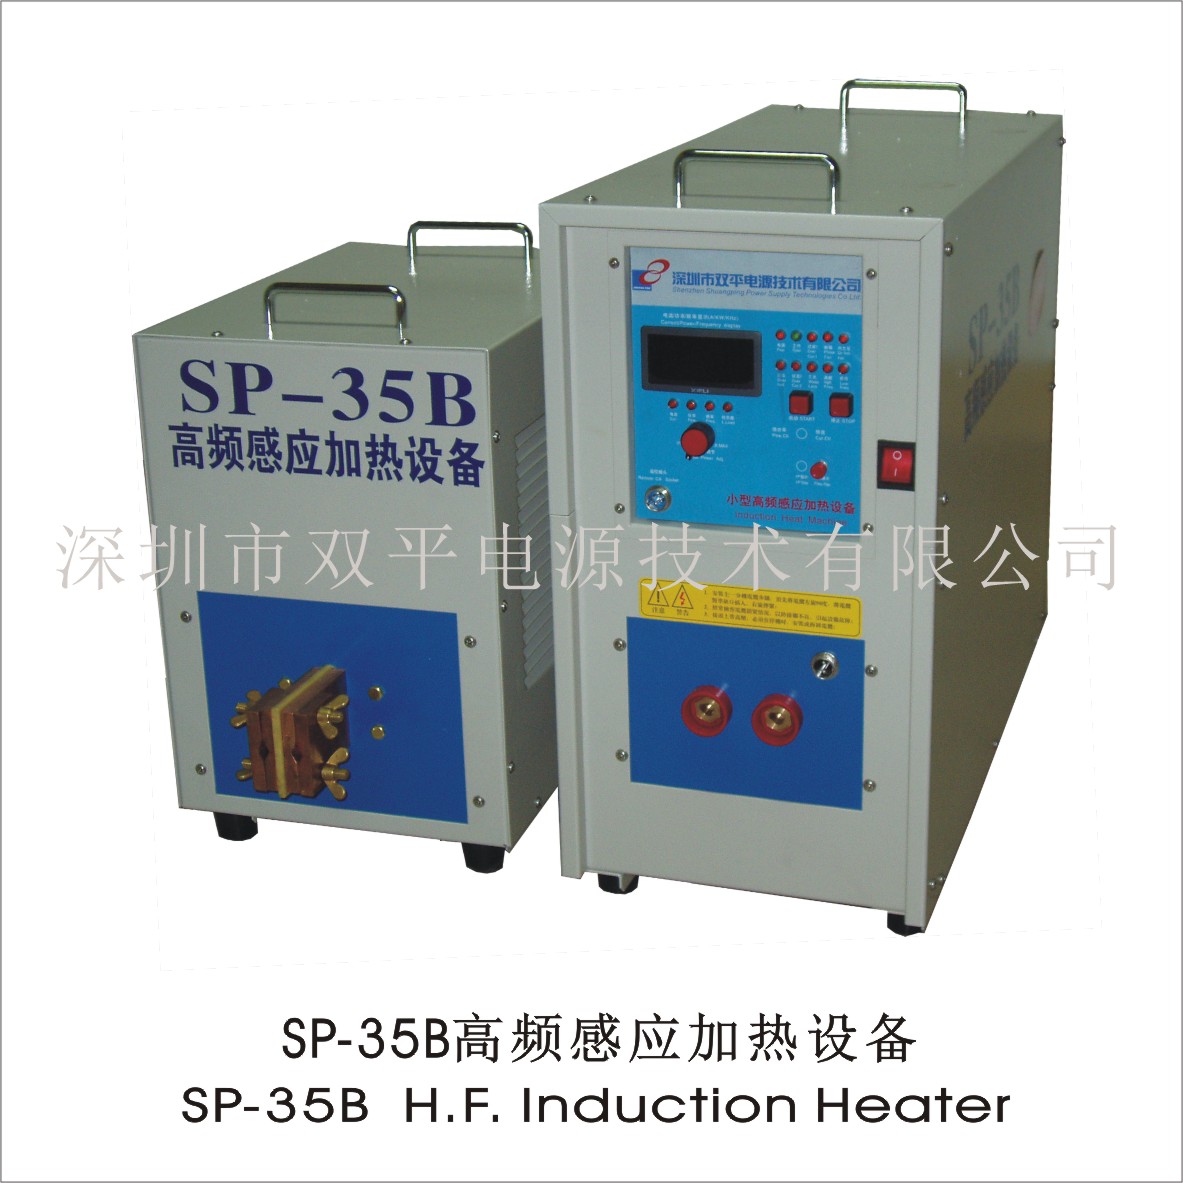 深圳双平SP-35B滚轮焊接零件热处理等高频感应加热设备